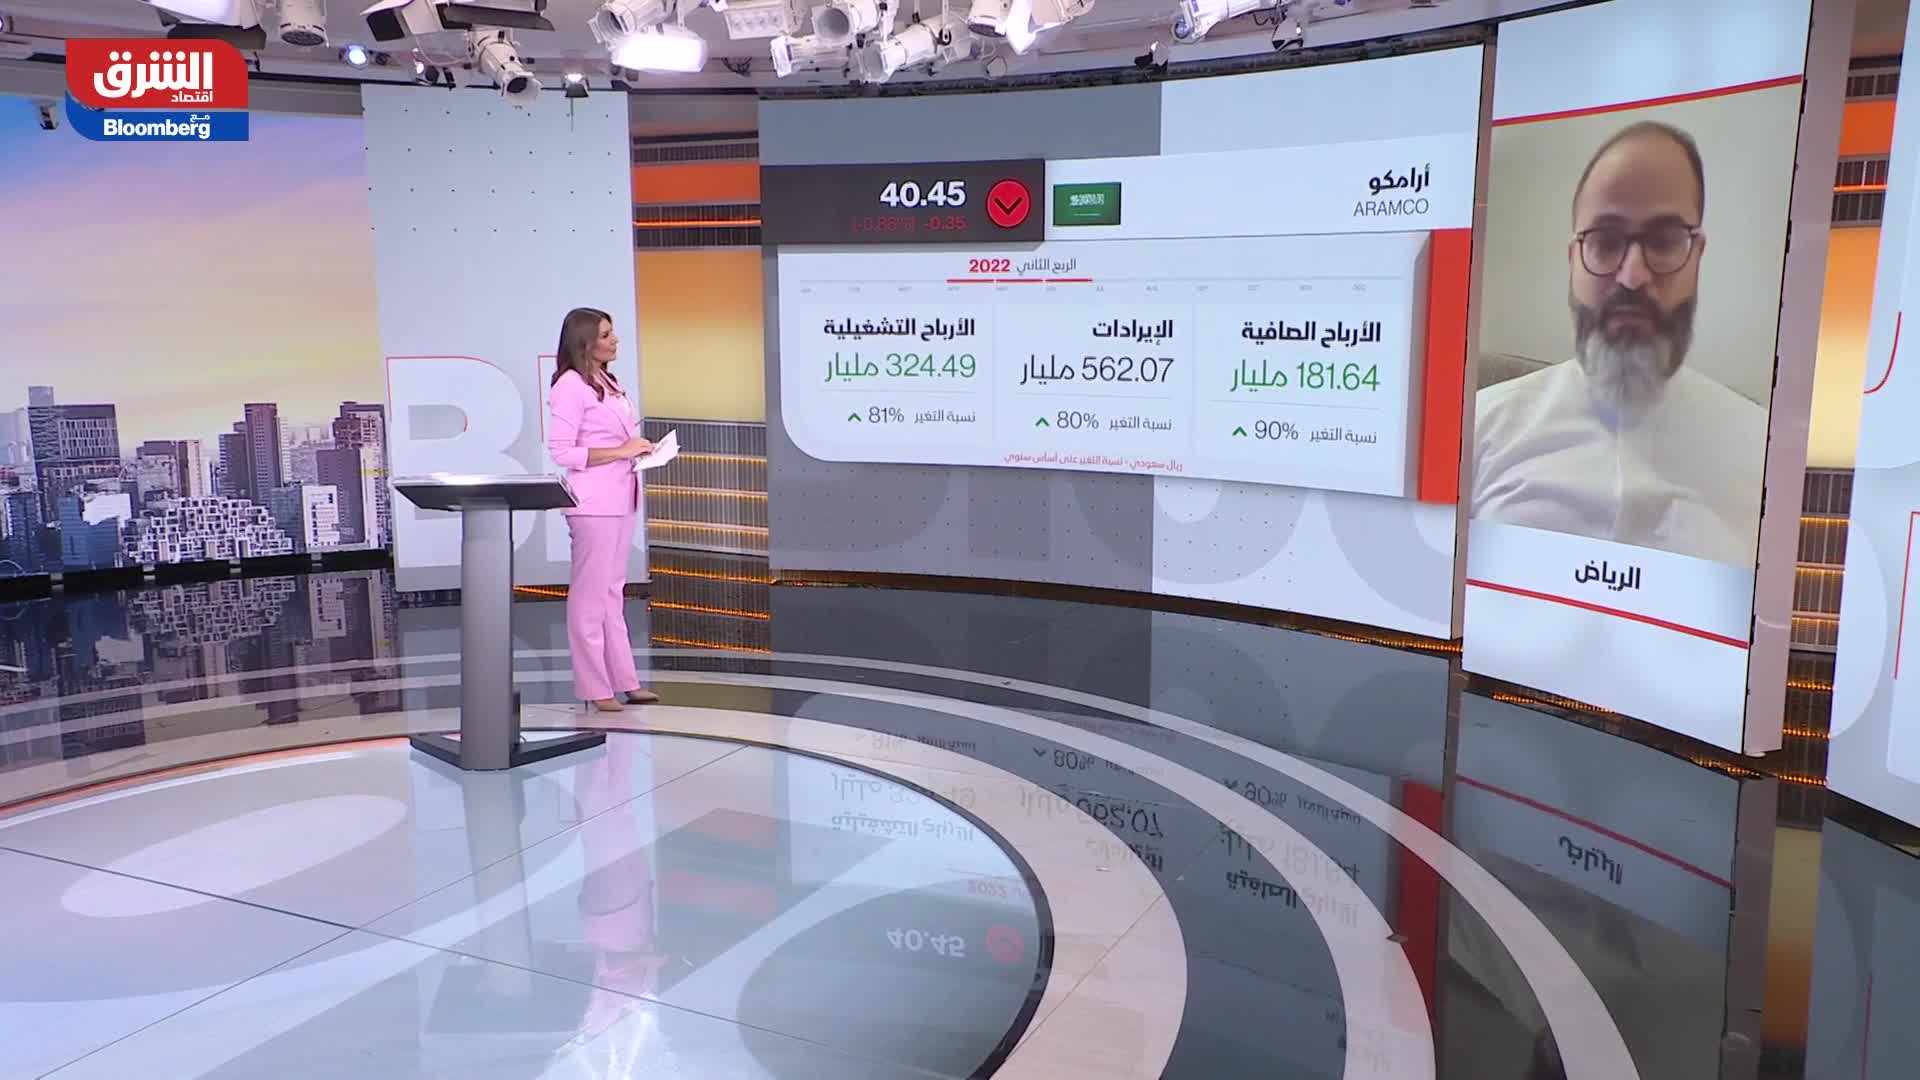 وائل مهدي: نتائج أرامكو السعودية طبيعة بسبب ارتفاع أسعار النفط وزيادة هوامش التكرير 